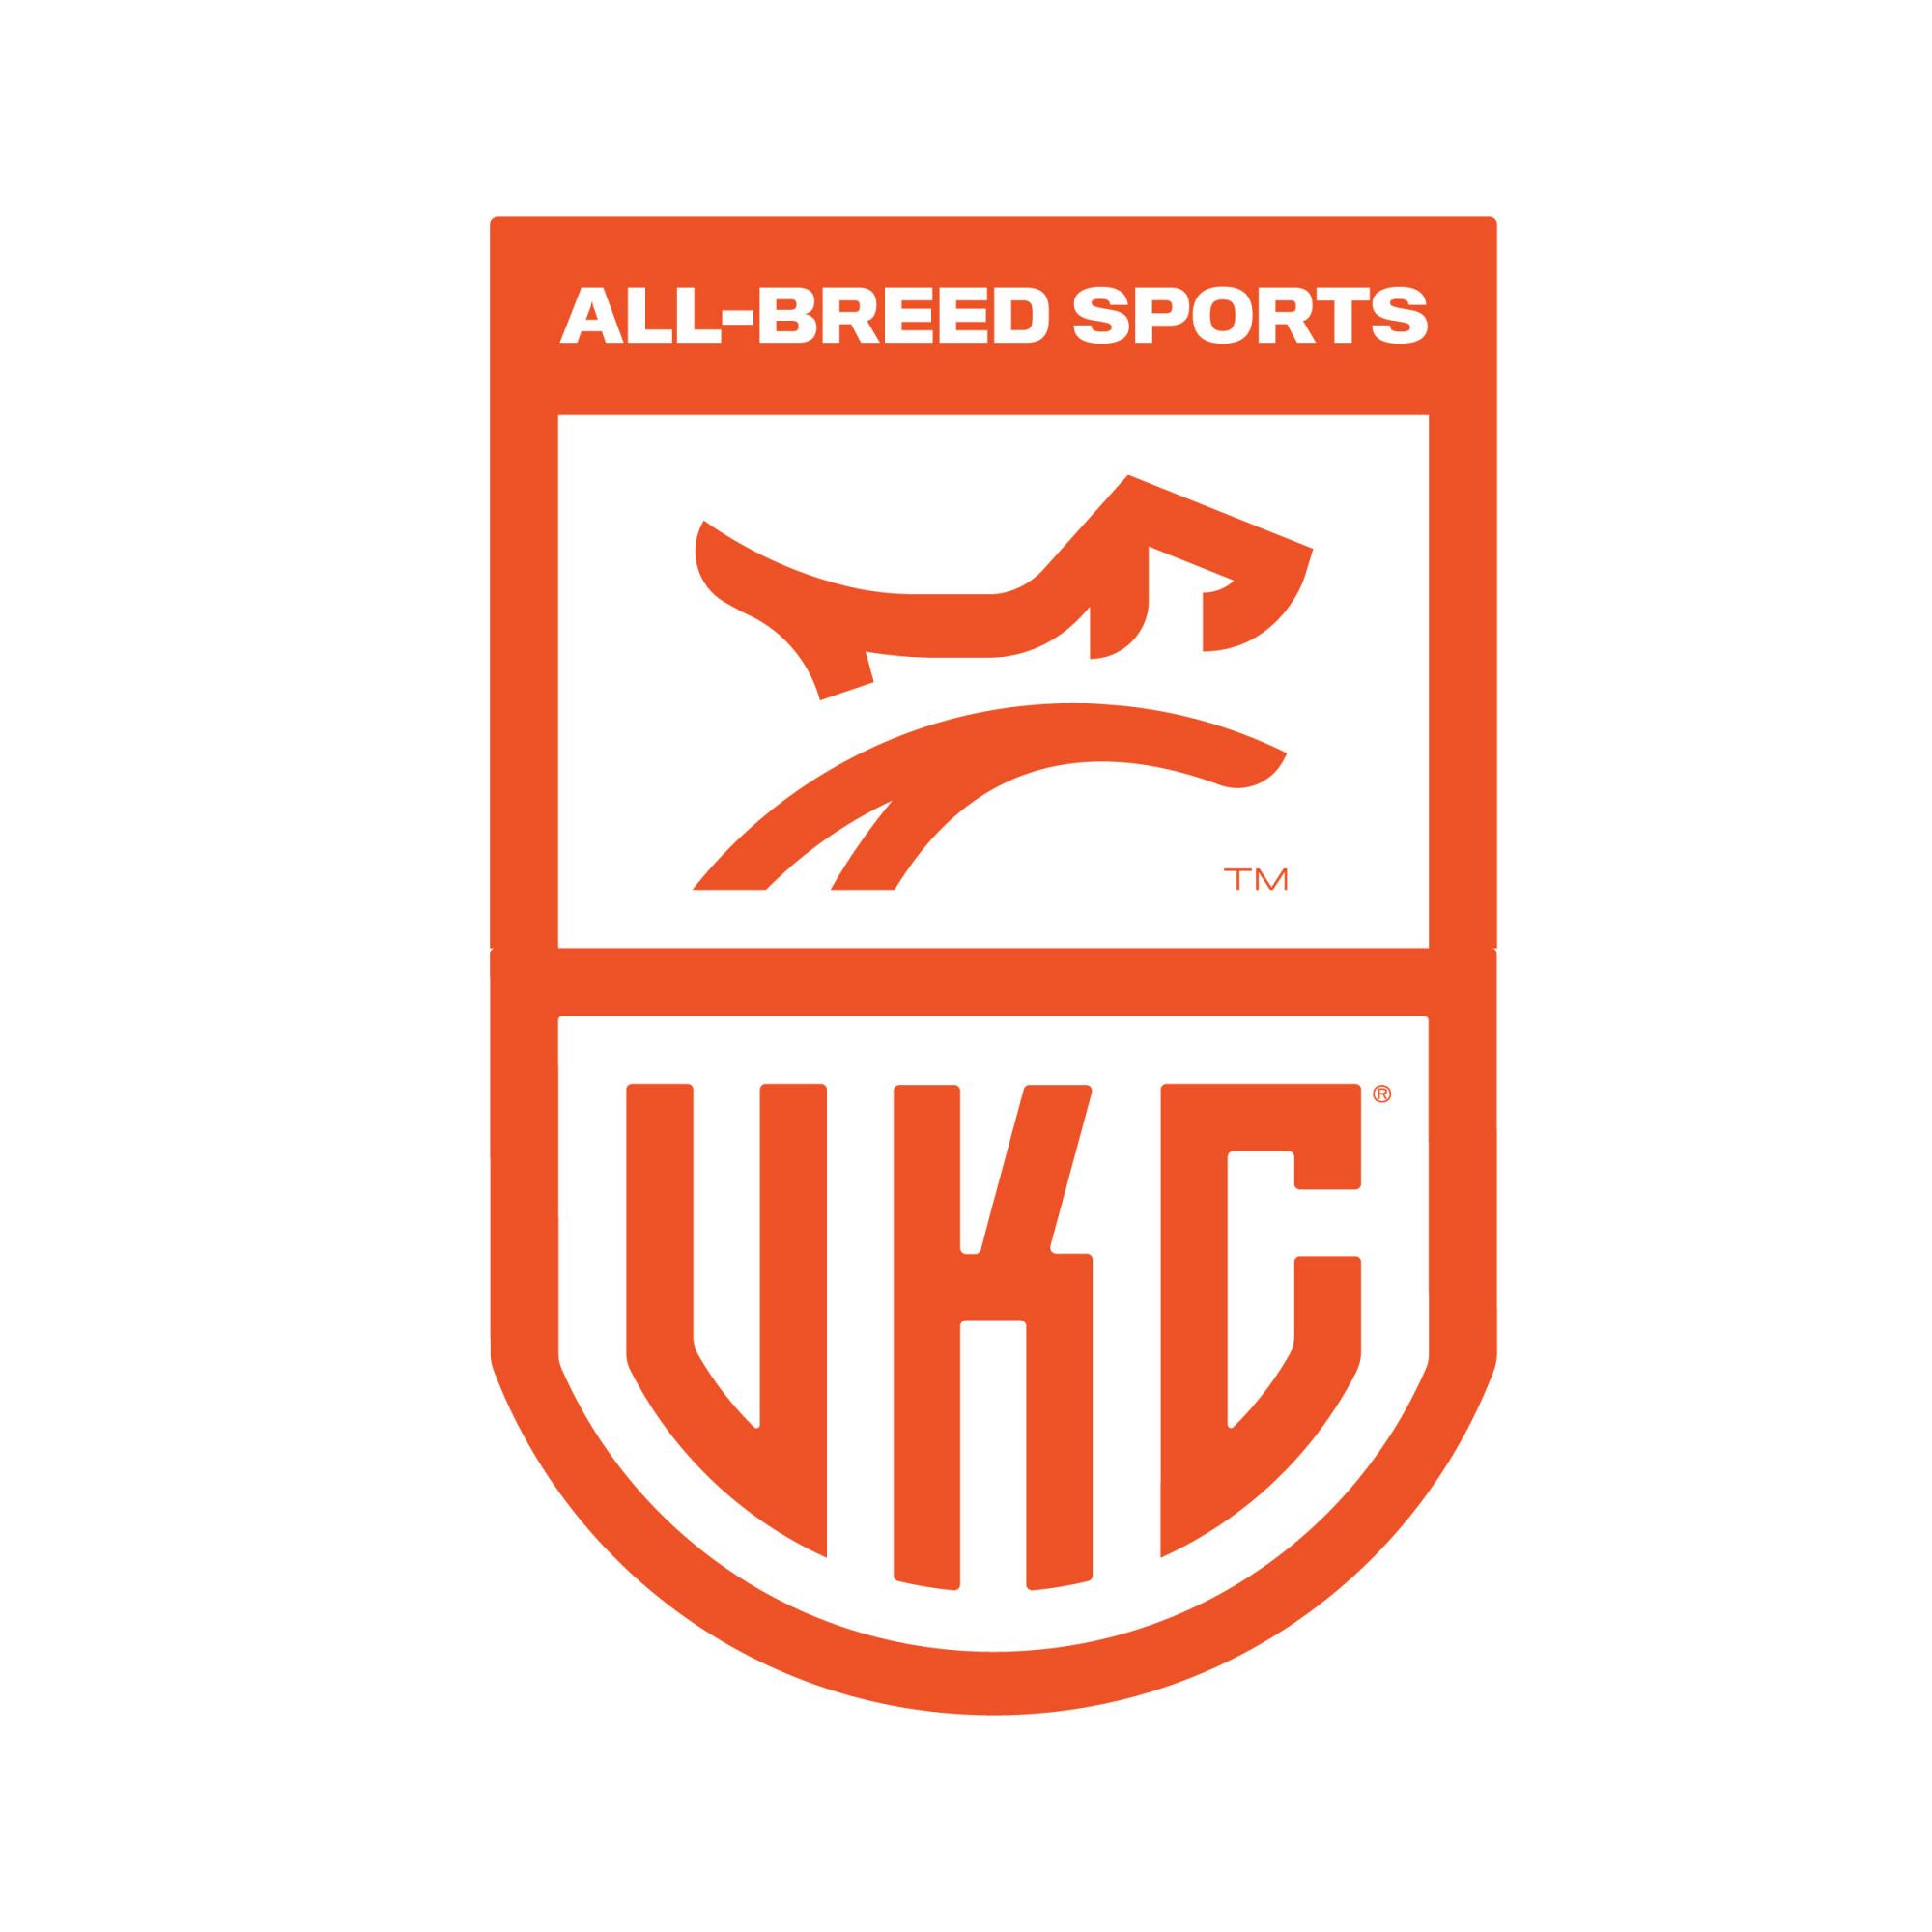 ukc-logo-all-breed-sports